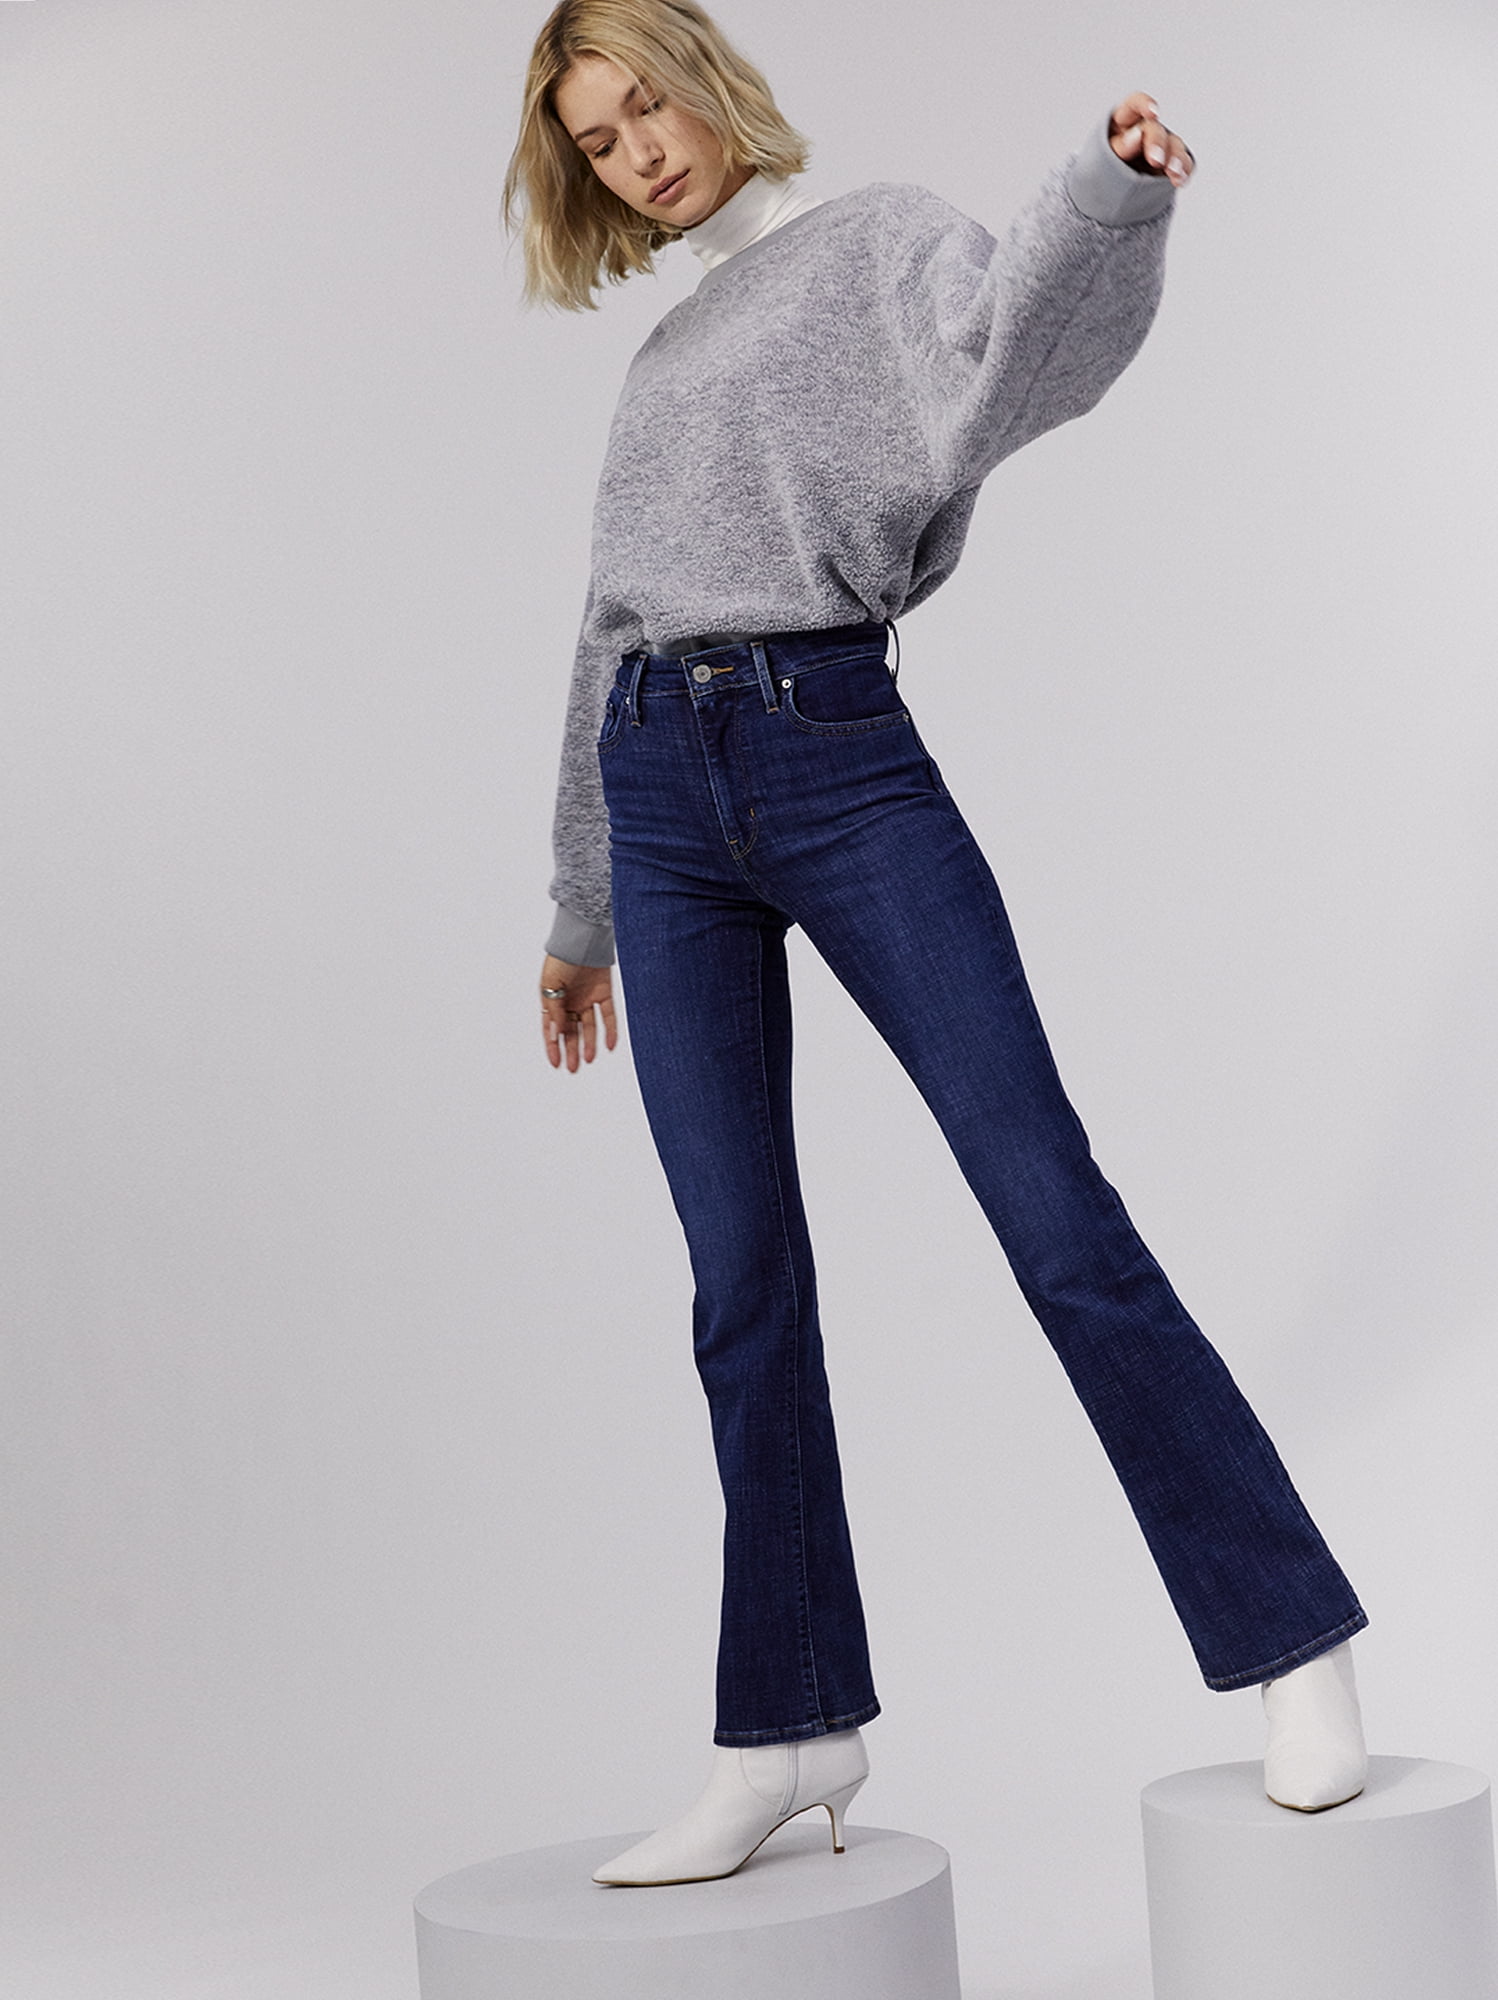 Levi's - Levi's Women's 725 High Rise Bootcut Jeans - Walmart.com ...